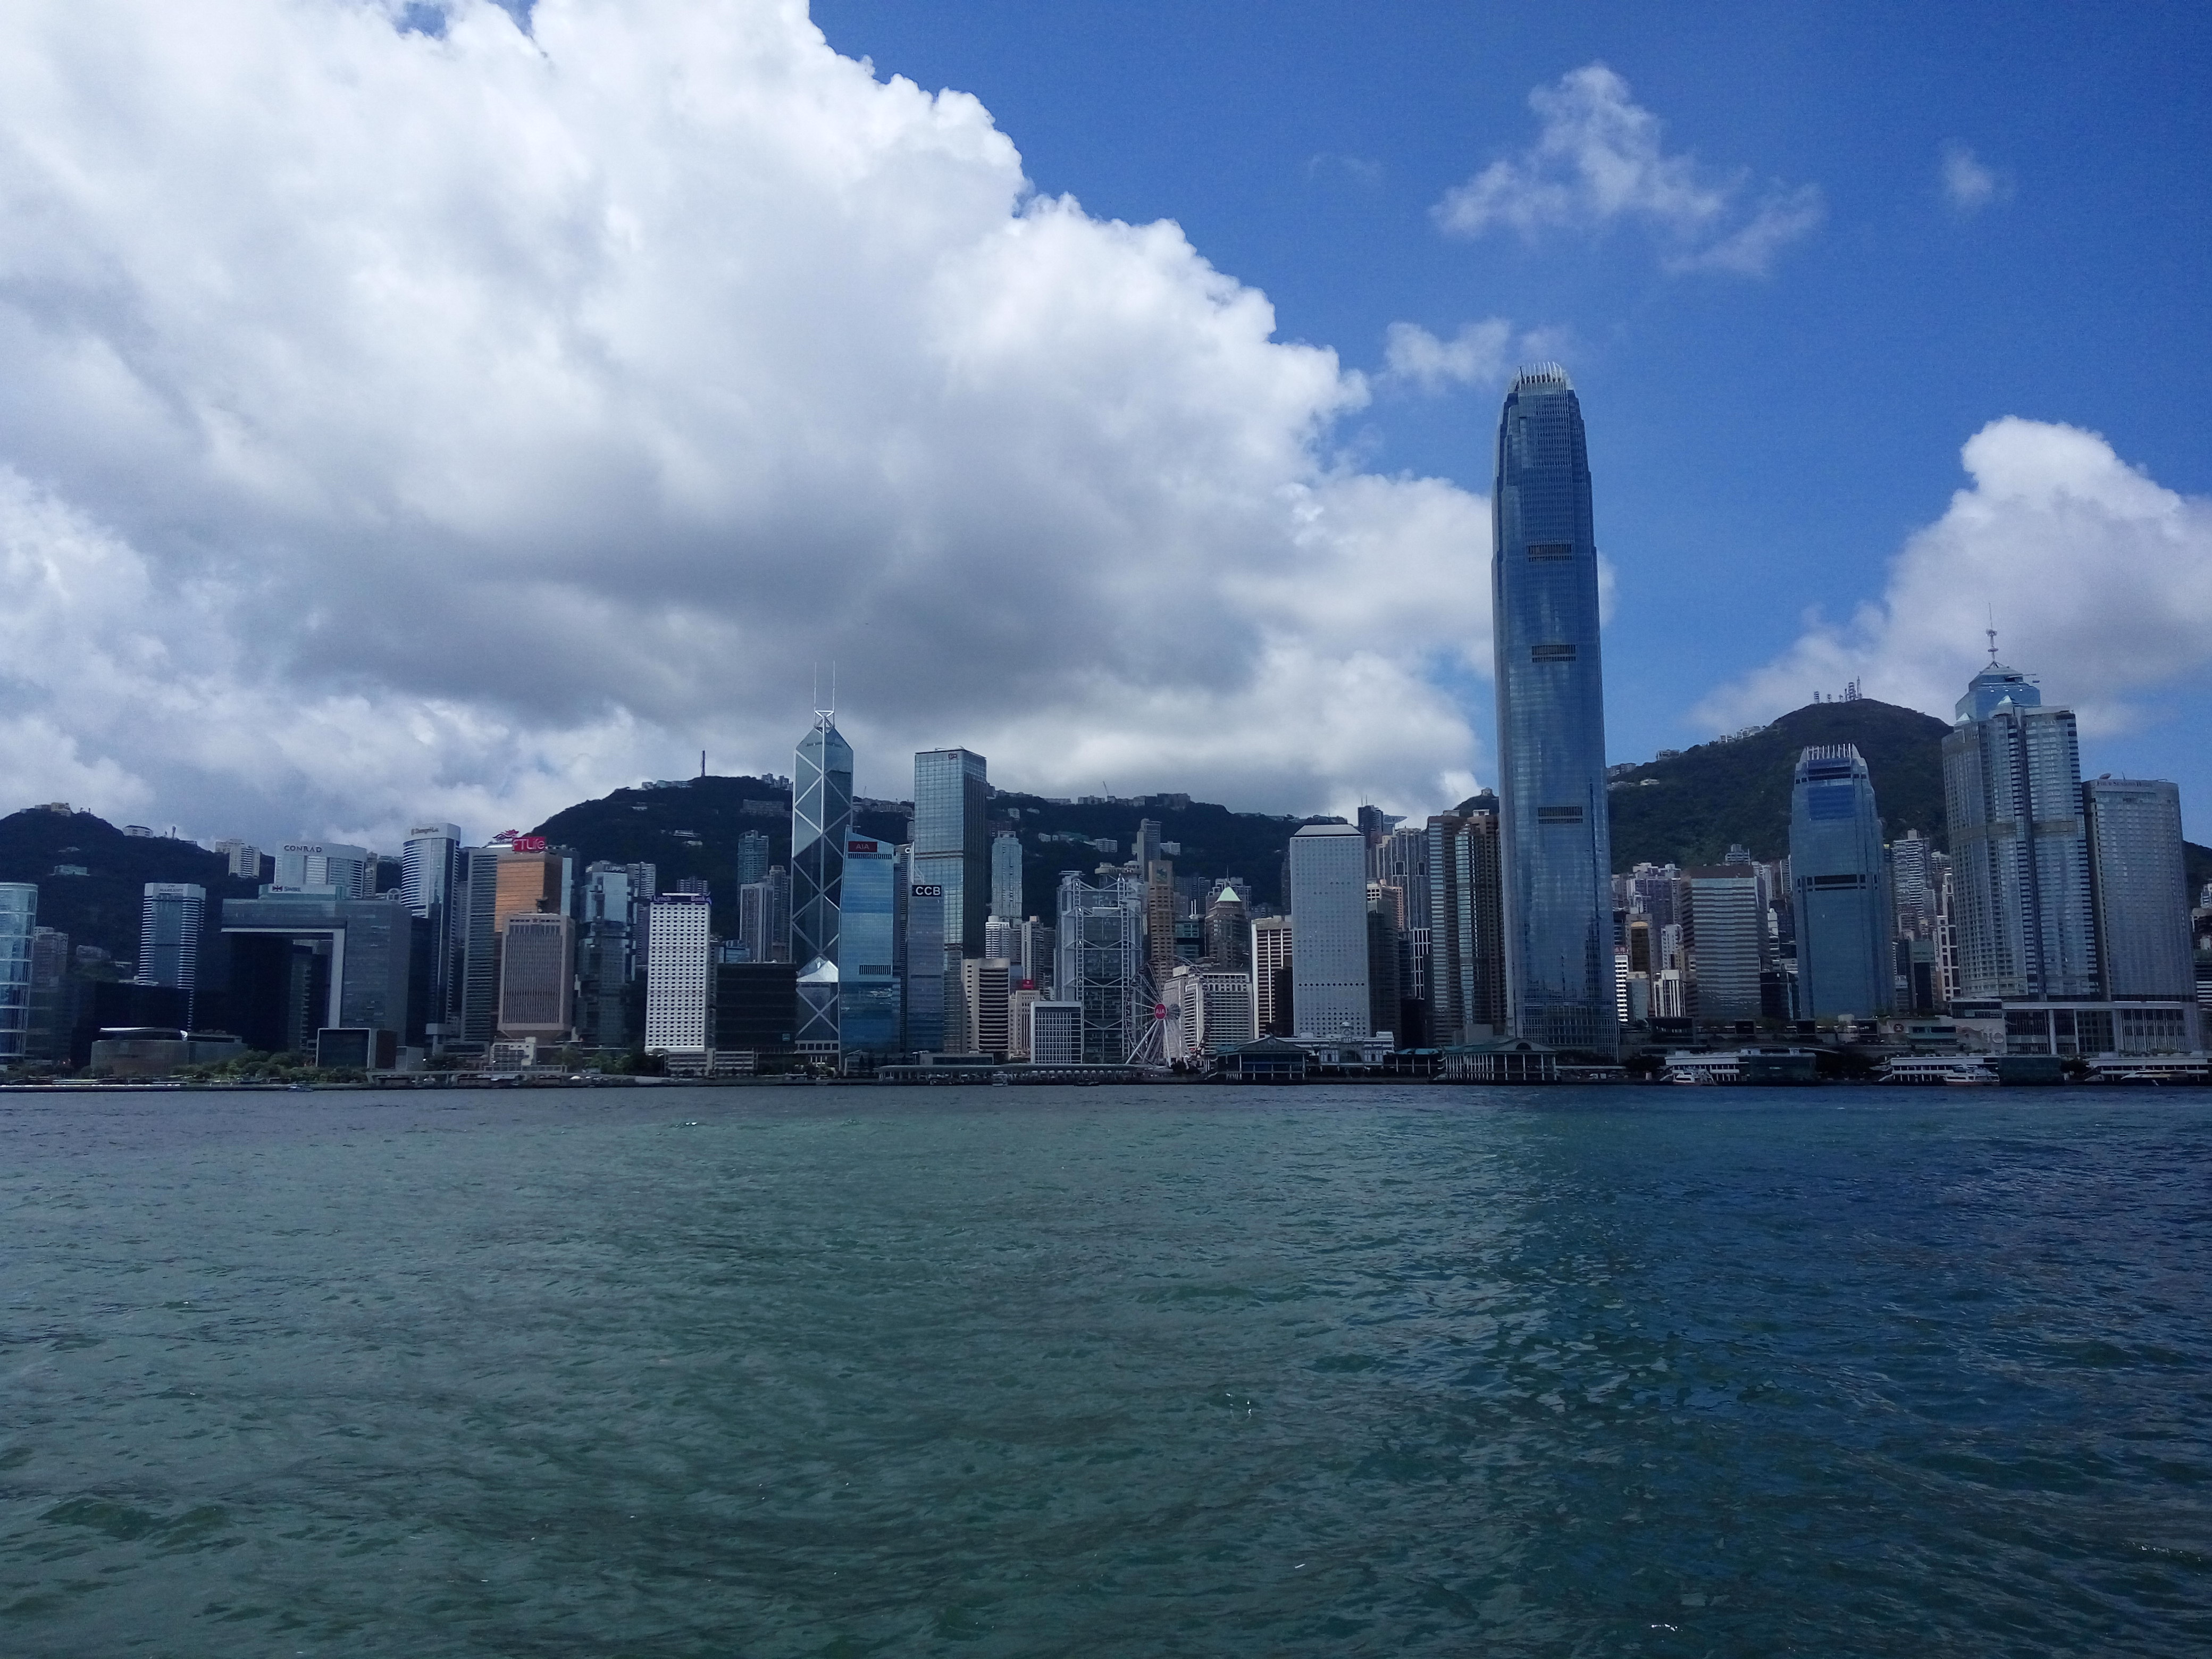 【携程攻略】香港中环适合朋友出游旅游吗,中环朋友出游景点推荐/点评